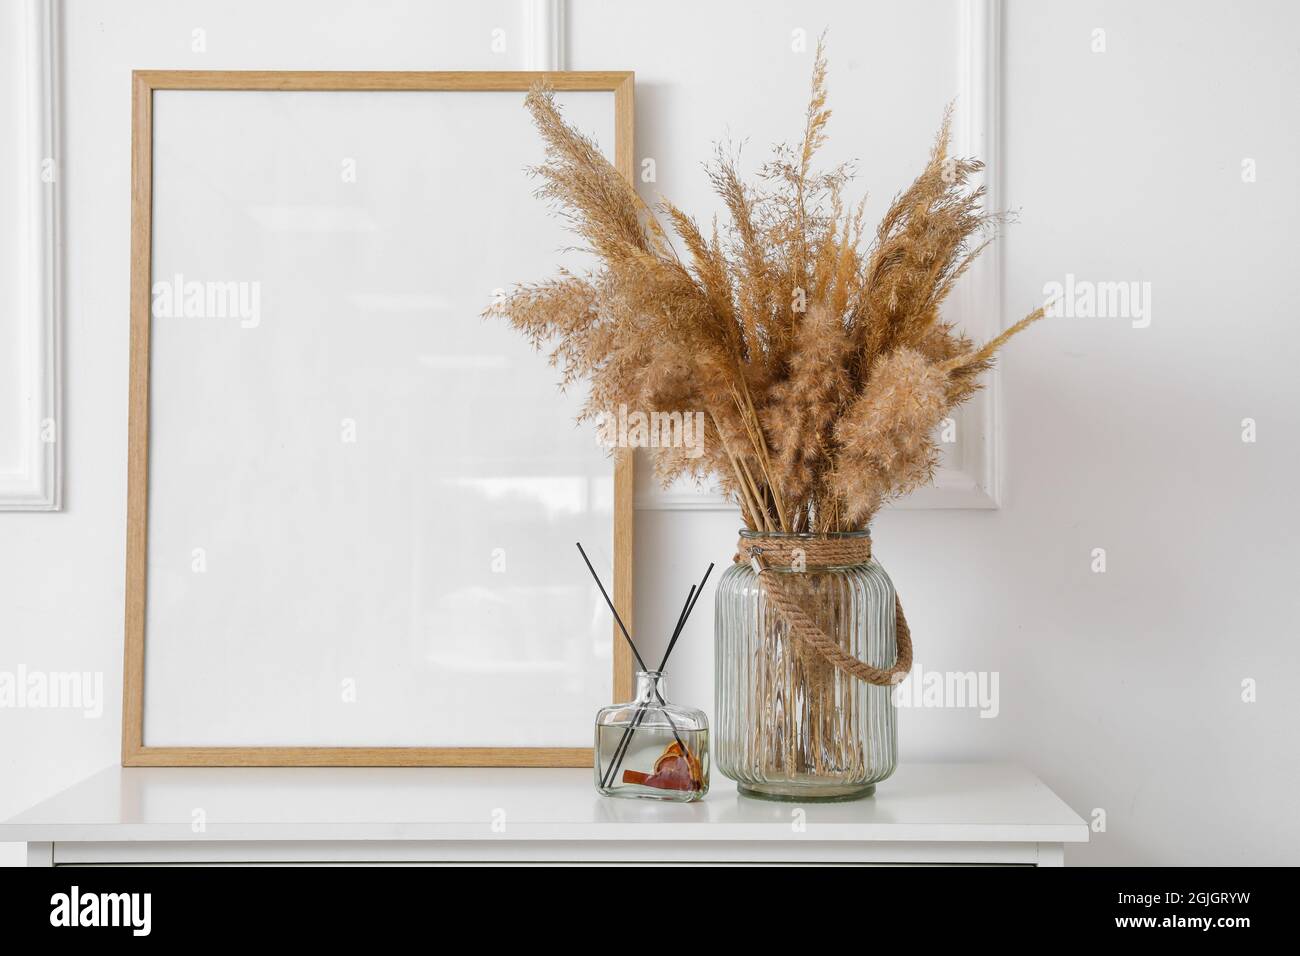 Vase mit trockenem Schilf und leerem Rahmen auf dem Tisch Stockfotografie -  Alamy